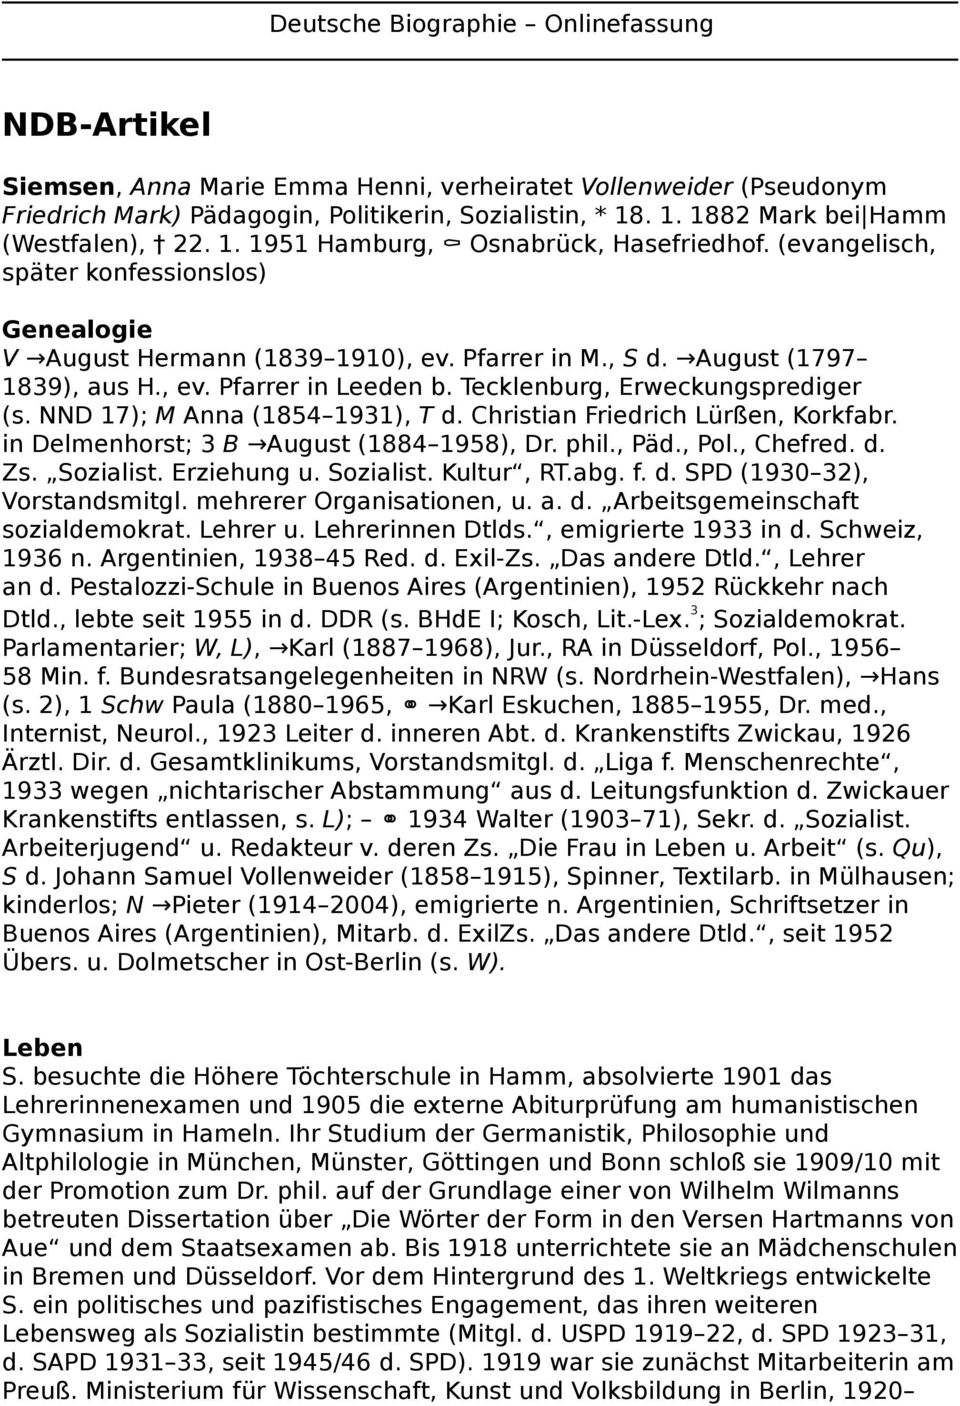 August (1797 1839), aus H., ev. Pfarrer in Leeden b. Tecklenburg, Erweckungsprediger (s. NND 17); M Anna (1854 1931), T d. Christian Friedrich Lürßen, Korkfabr.